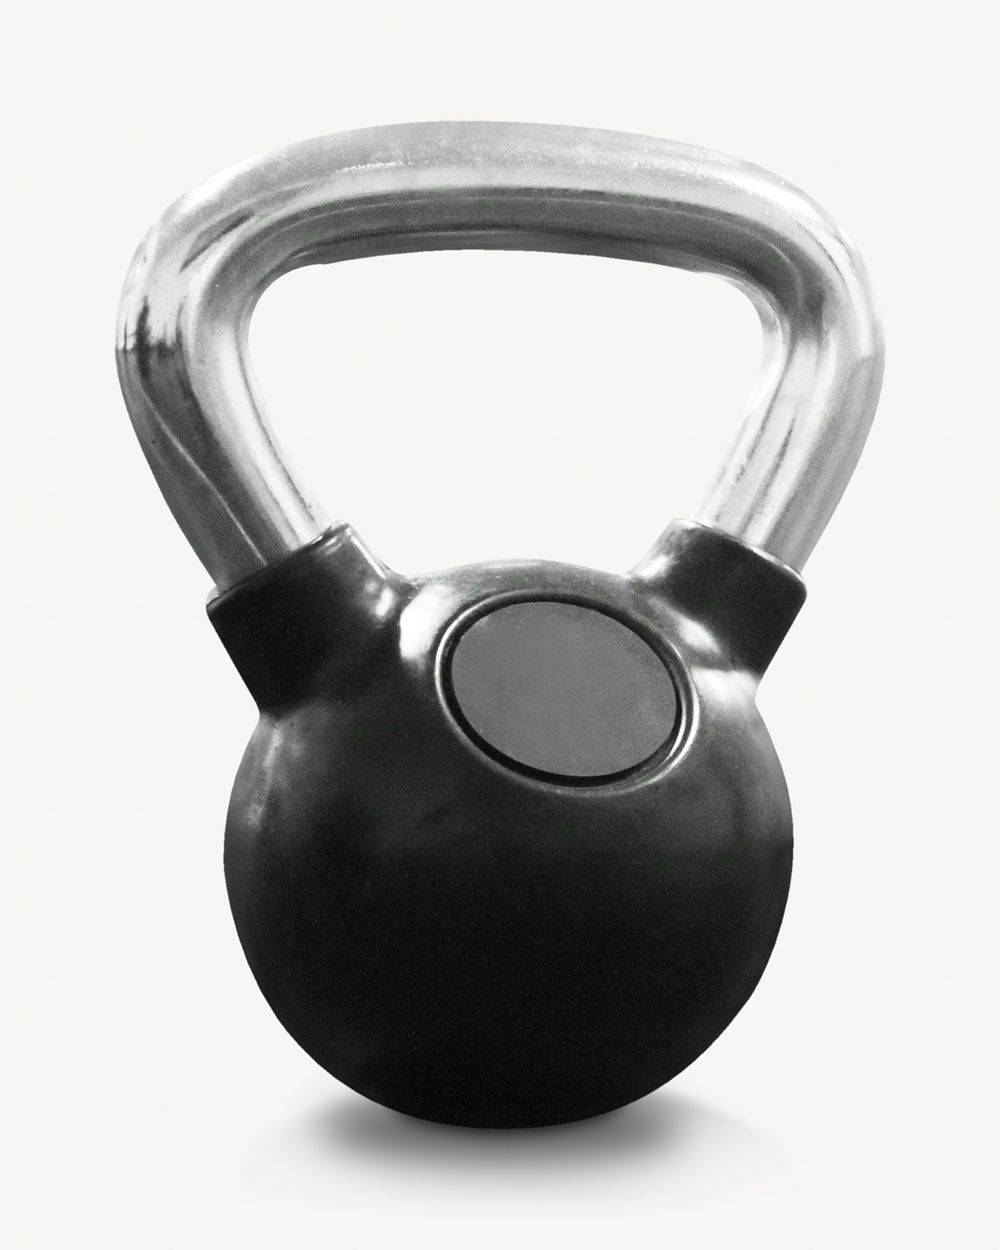 Gym kettlebell, equipment isolated design 